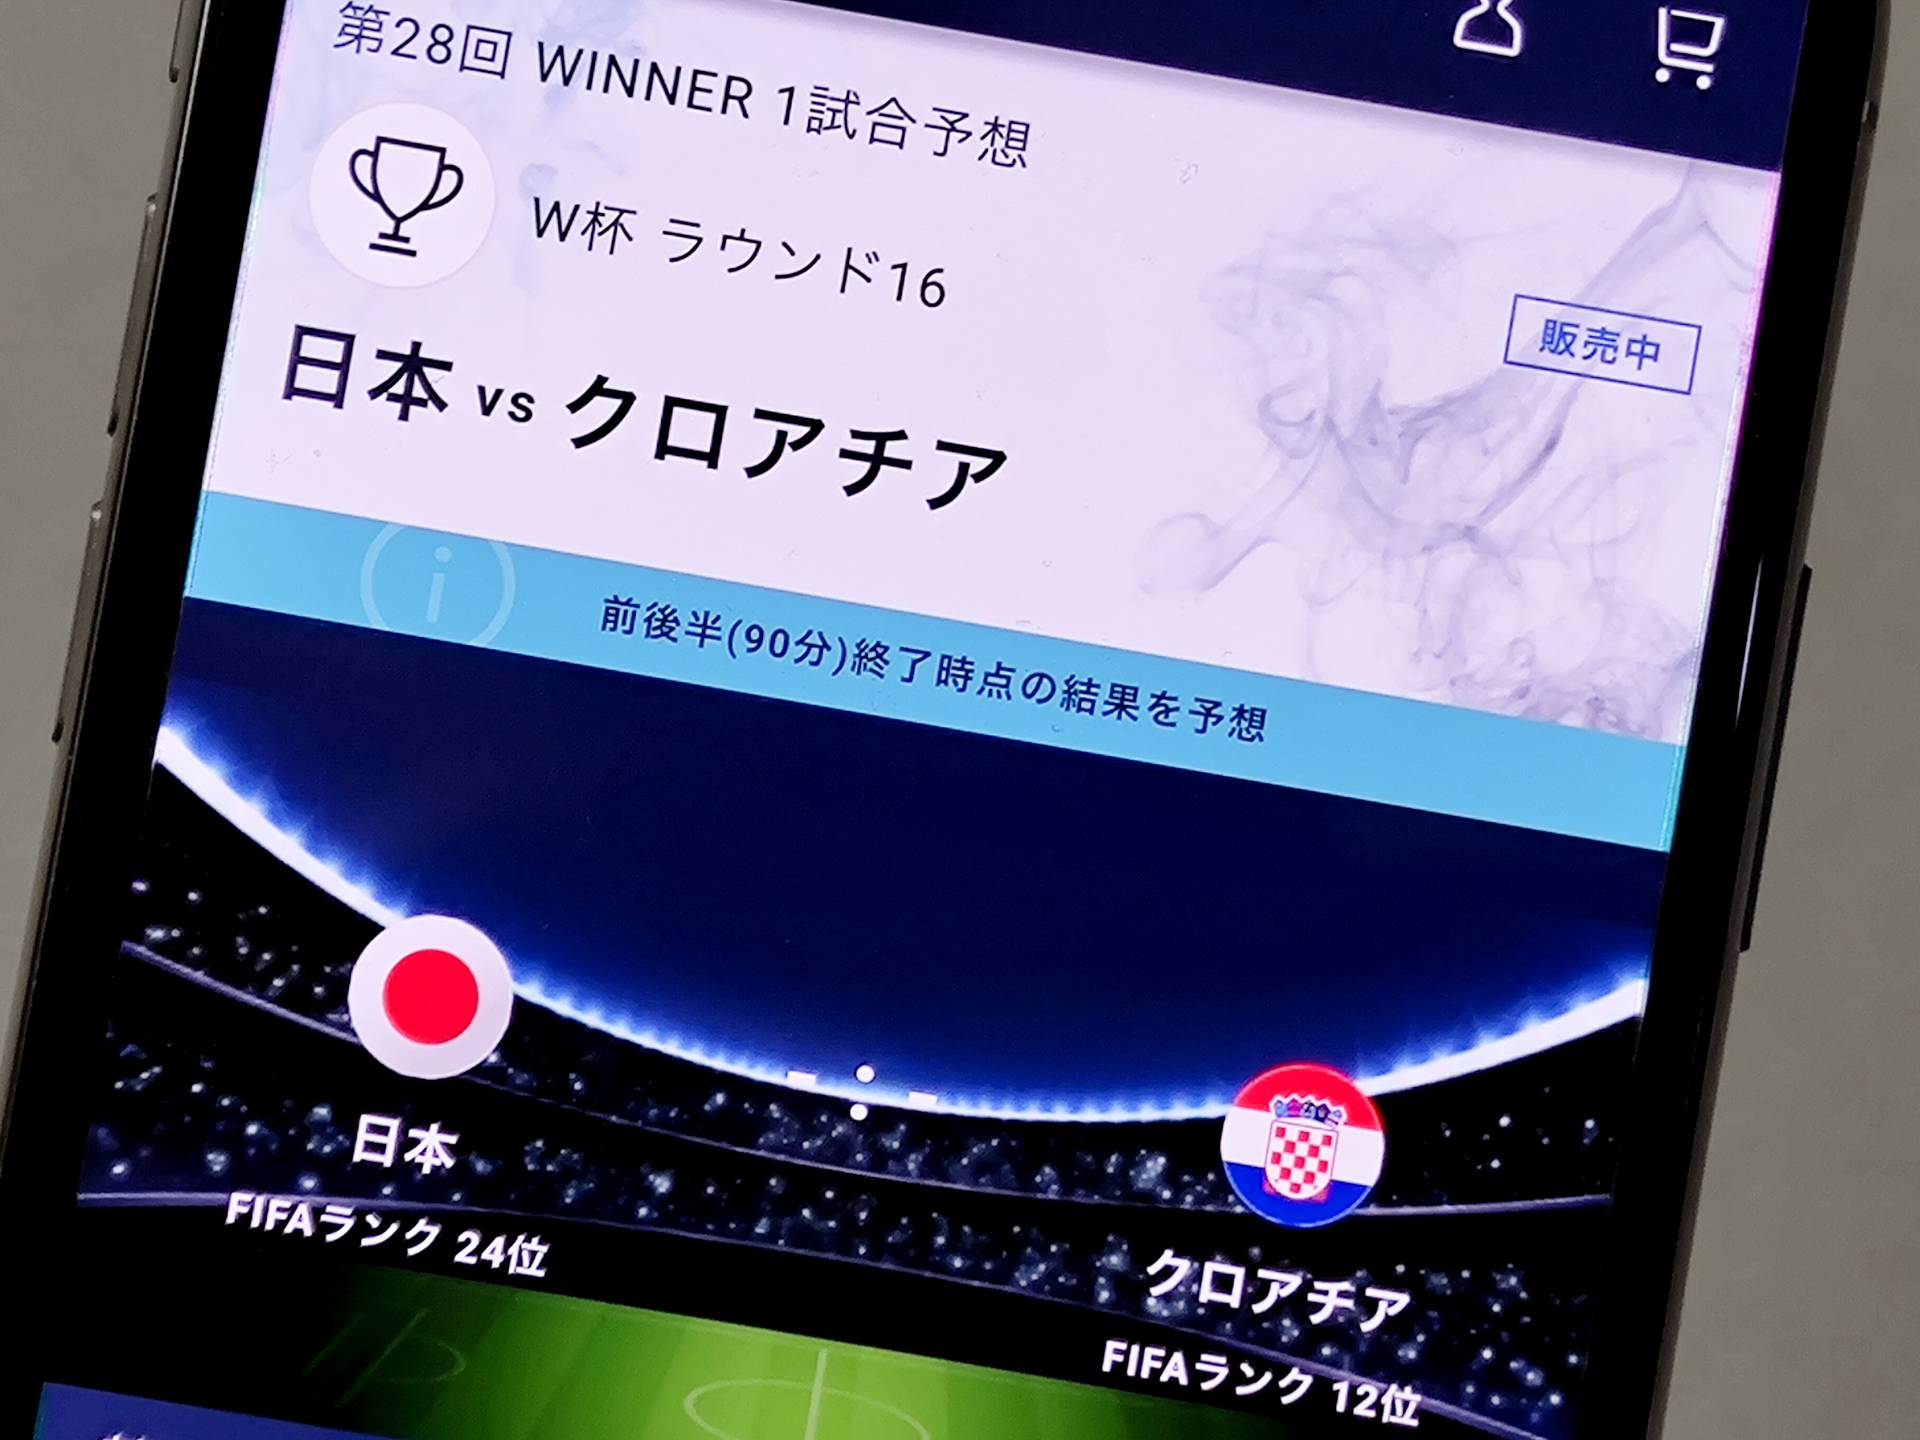 サッカーワールドカップ「日本対クロアチア戦」、スポーツくじ「WINNER 